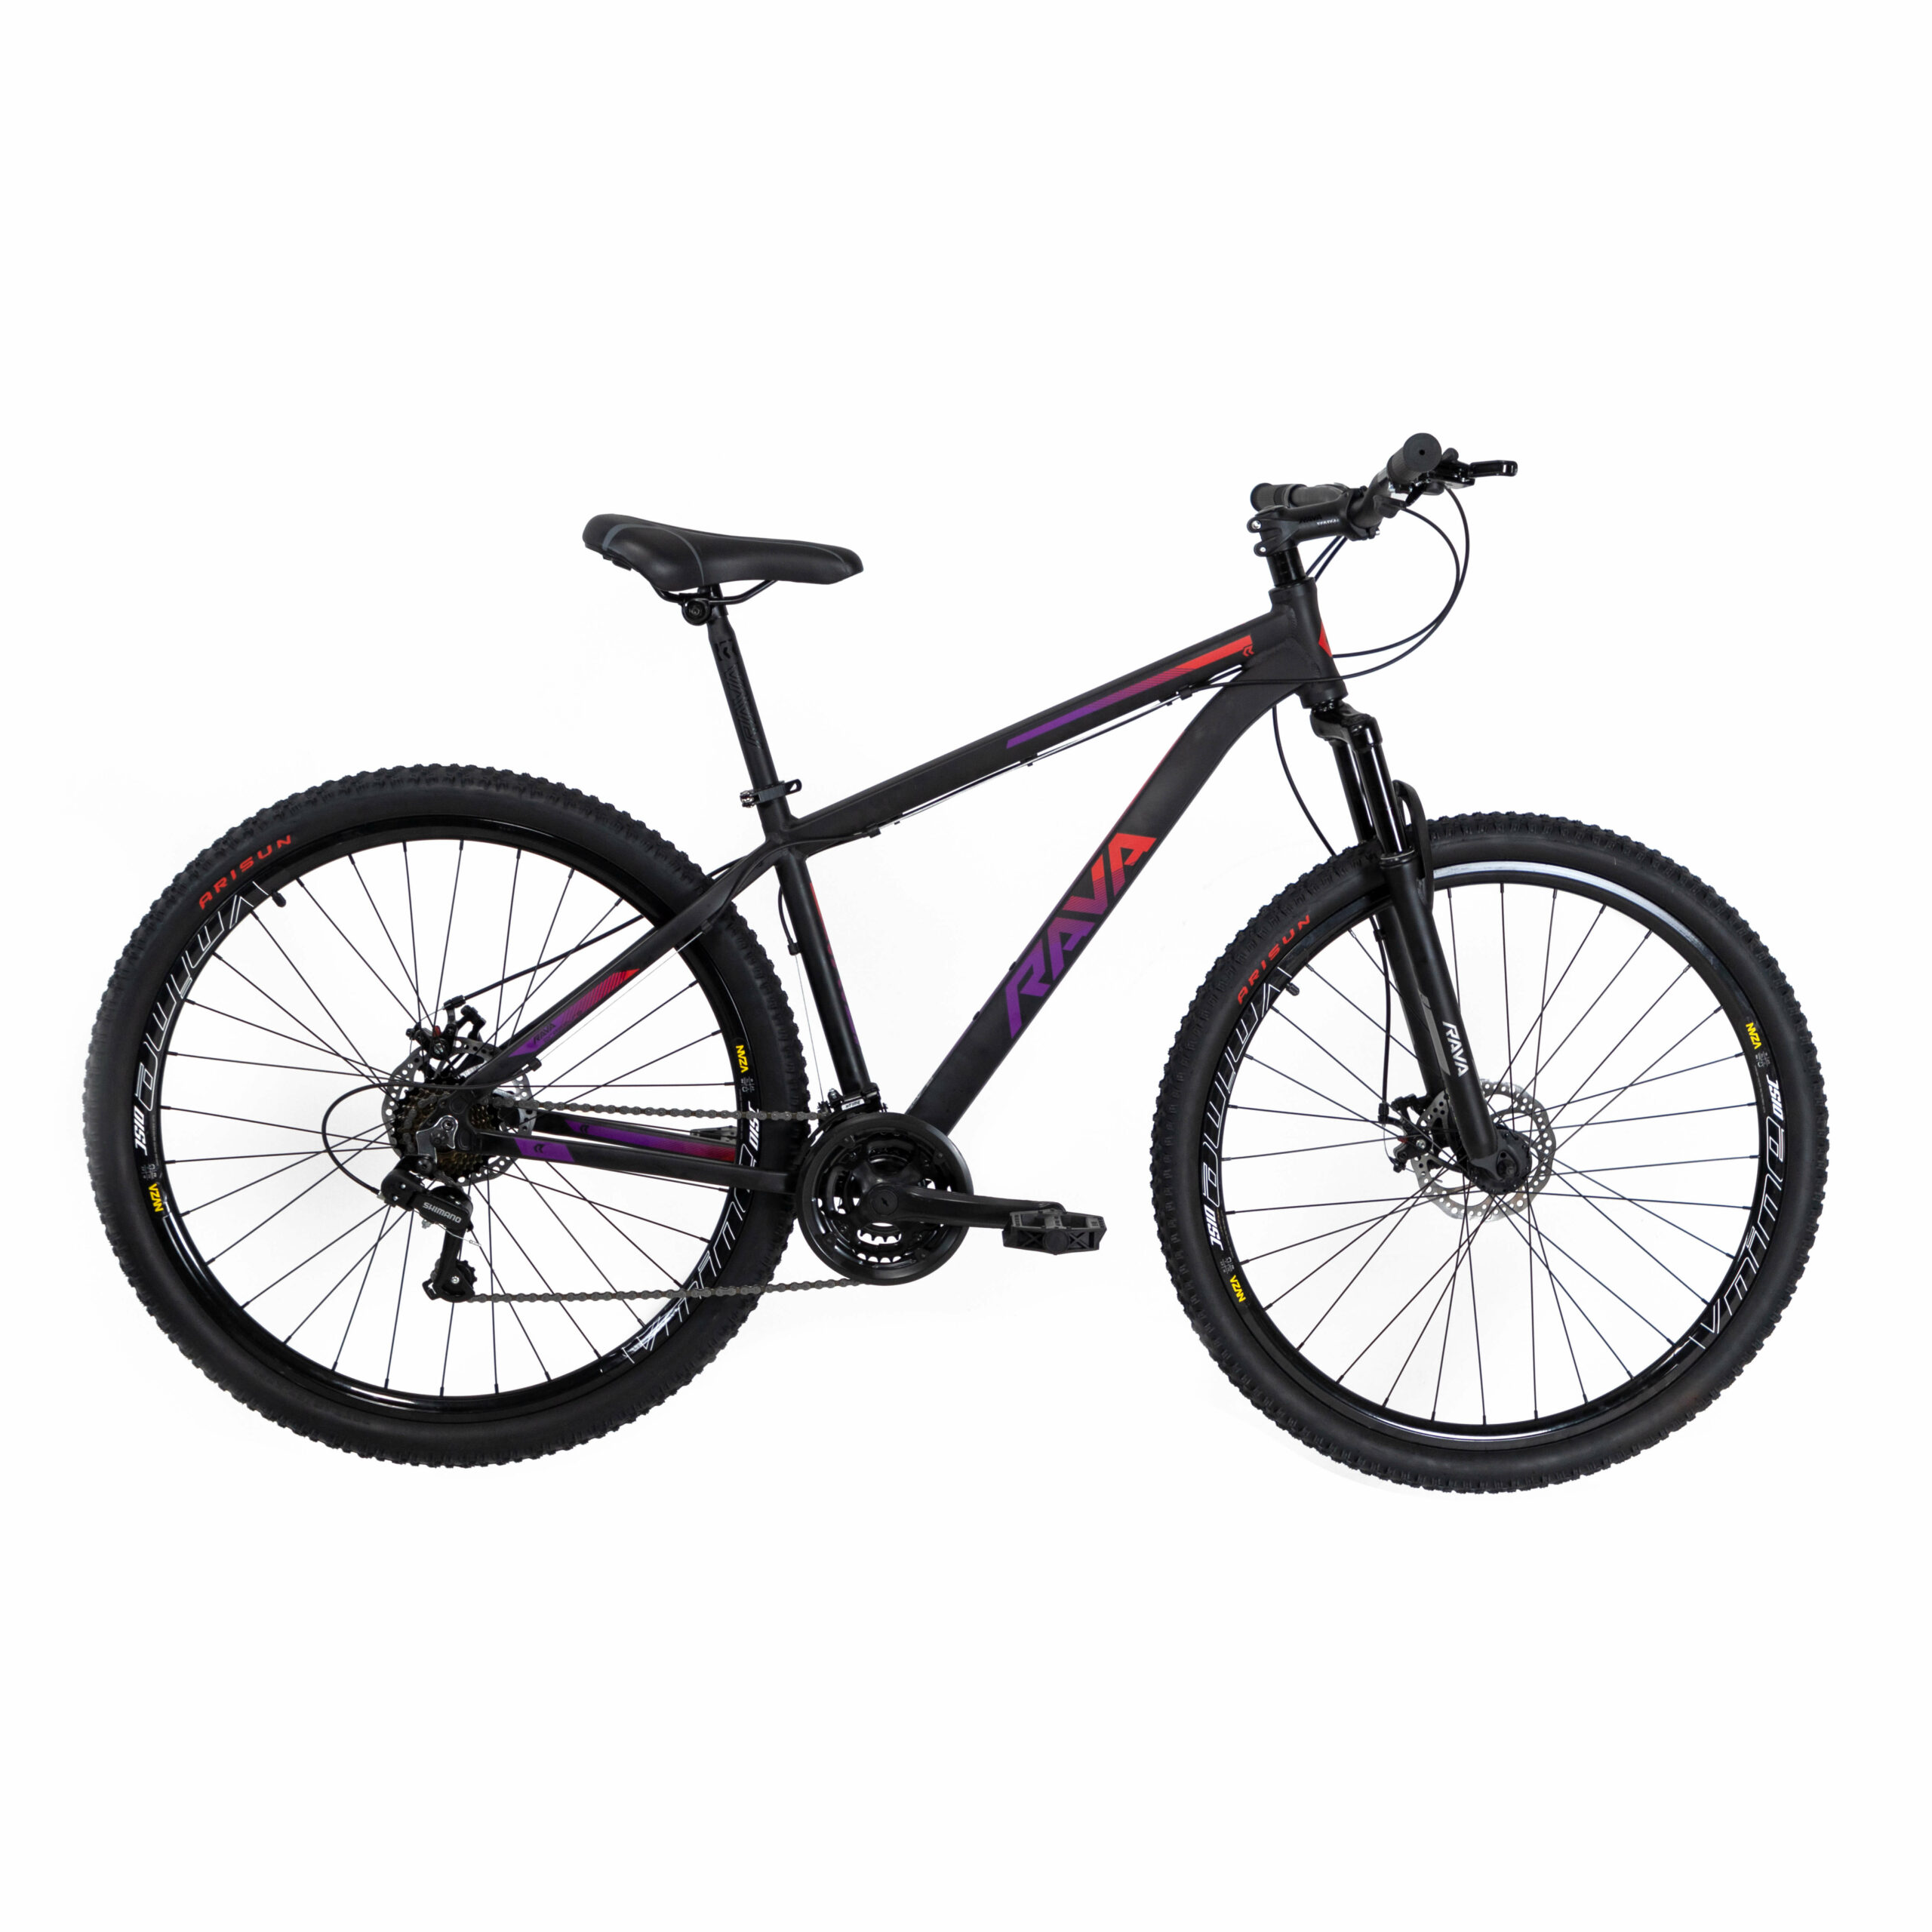 Bicicleta Rava Pressure 2019/2020 | 21 v. - Preto/Vermelho/Violeta, 15.5"